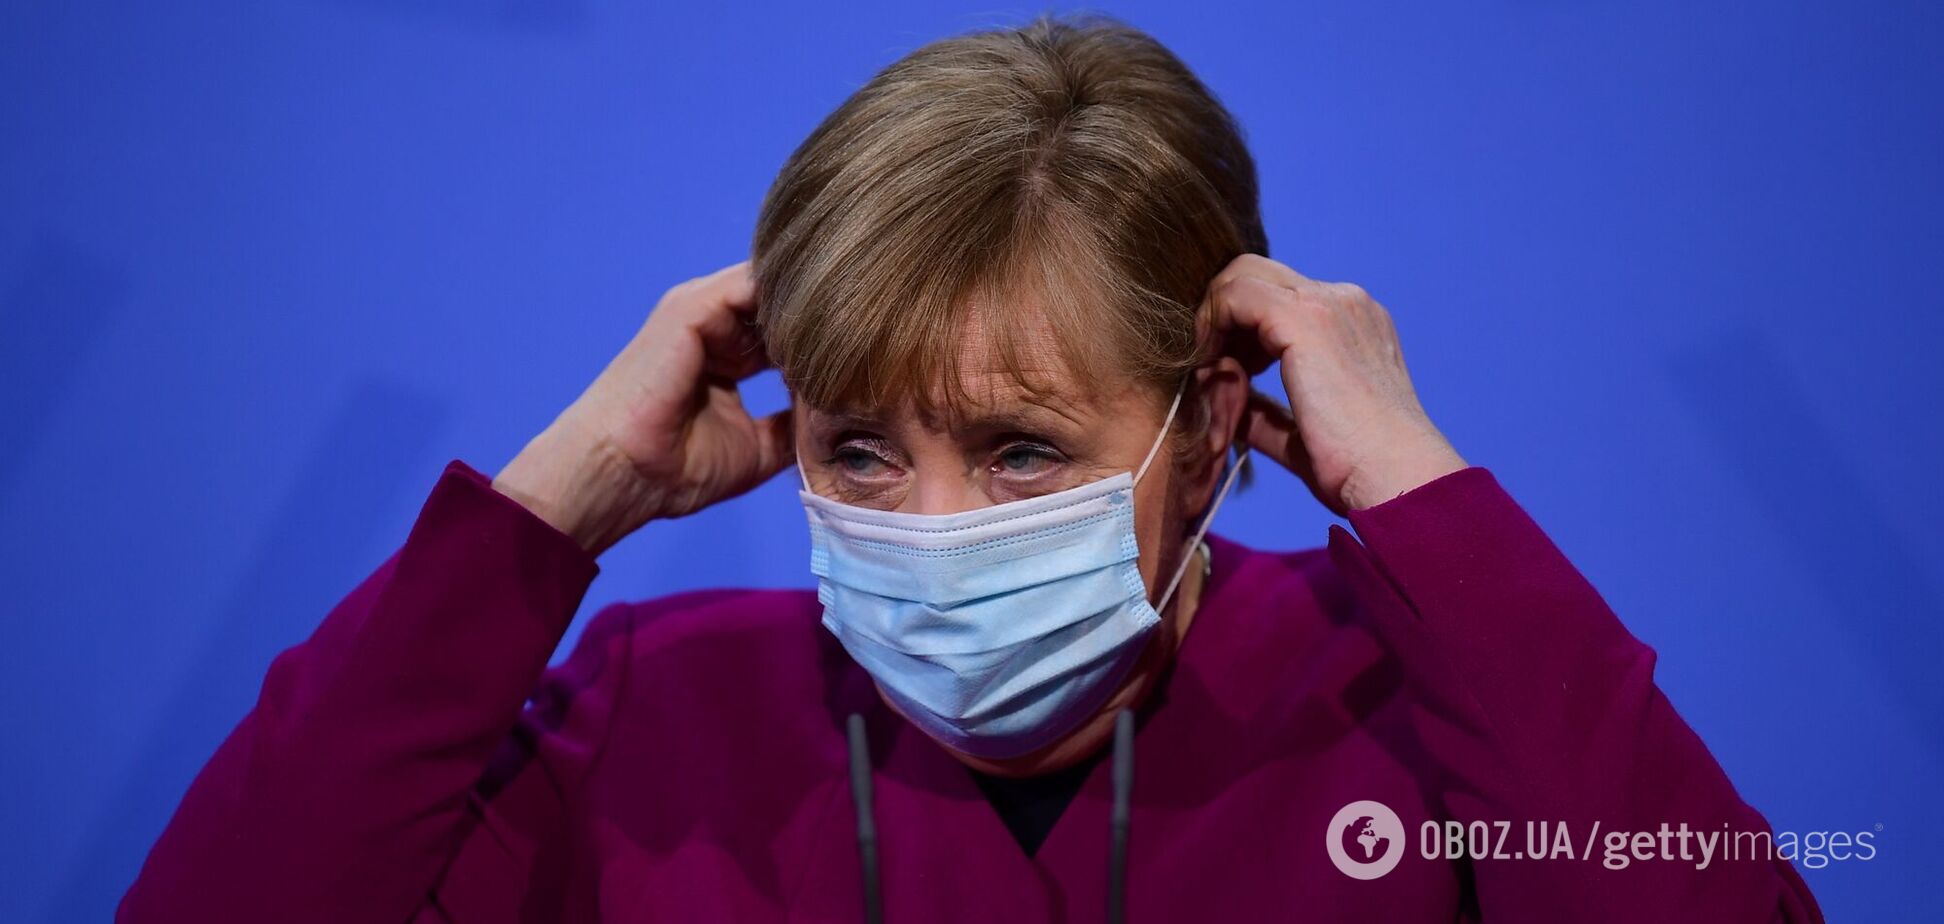 Меркель заговорила о новой пандемии: в СМИ увидели намек на мегалокдаун